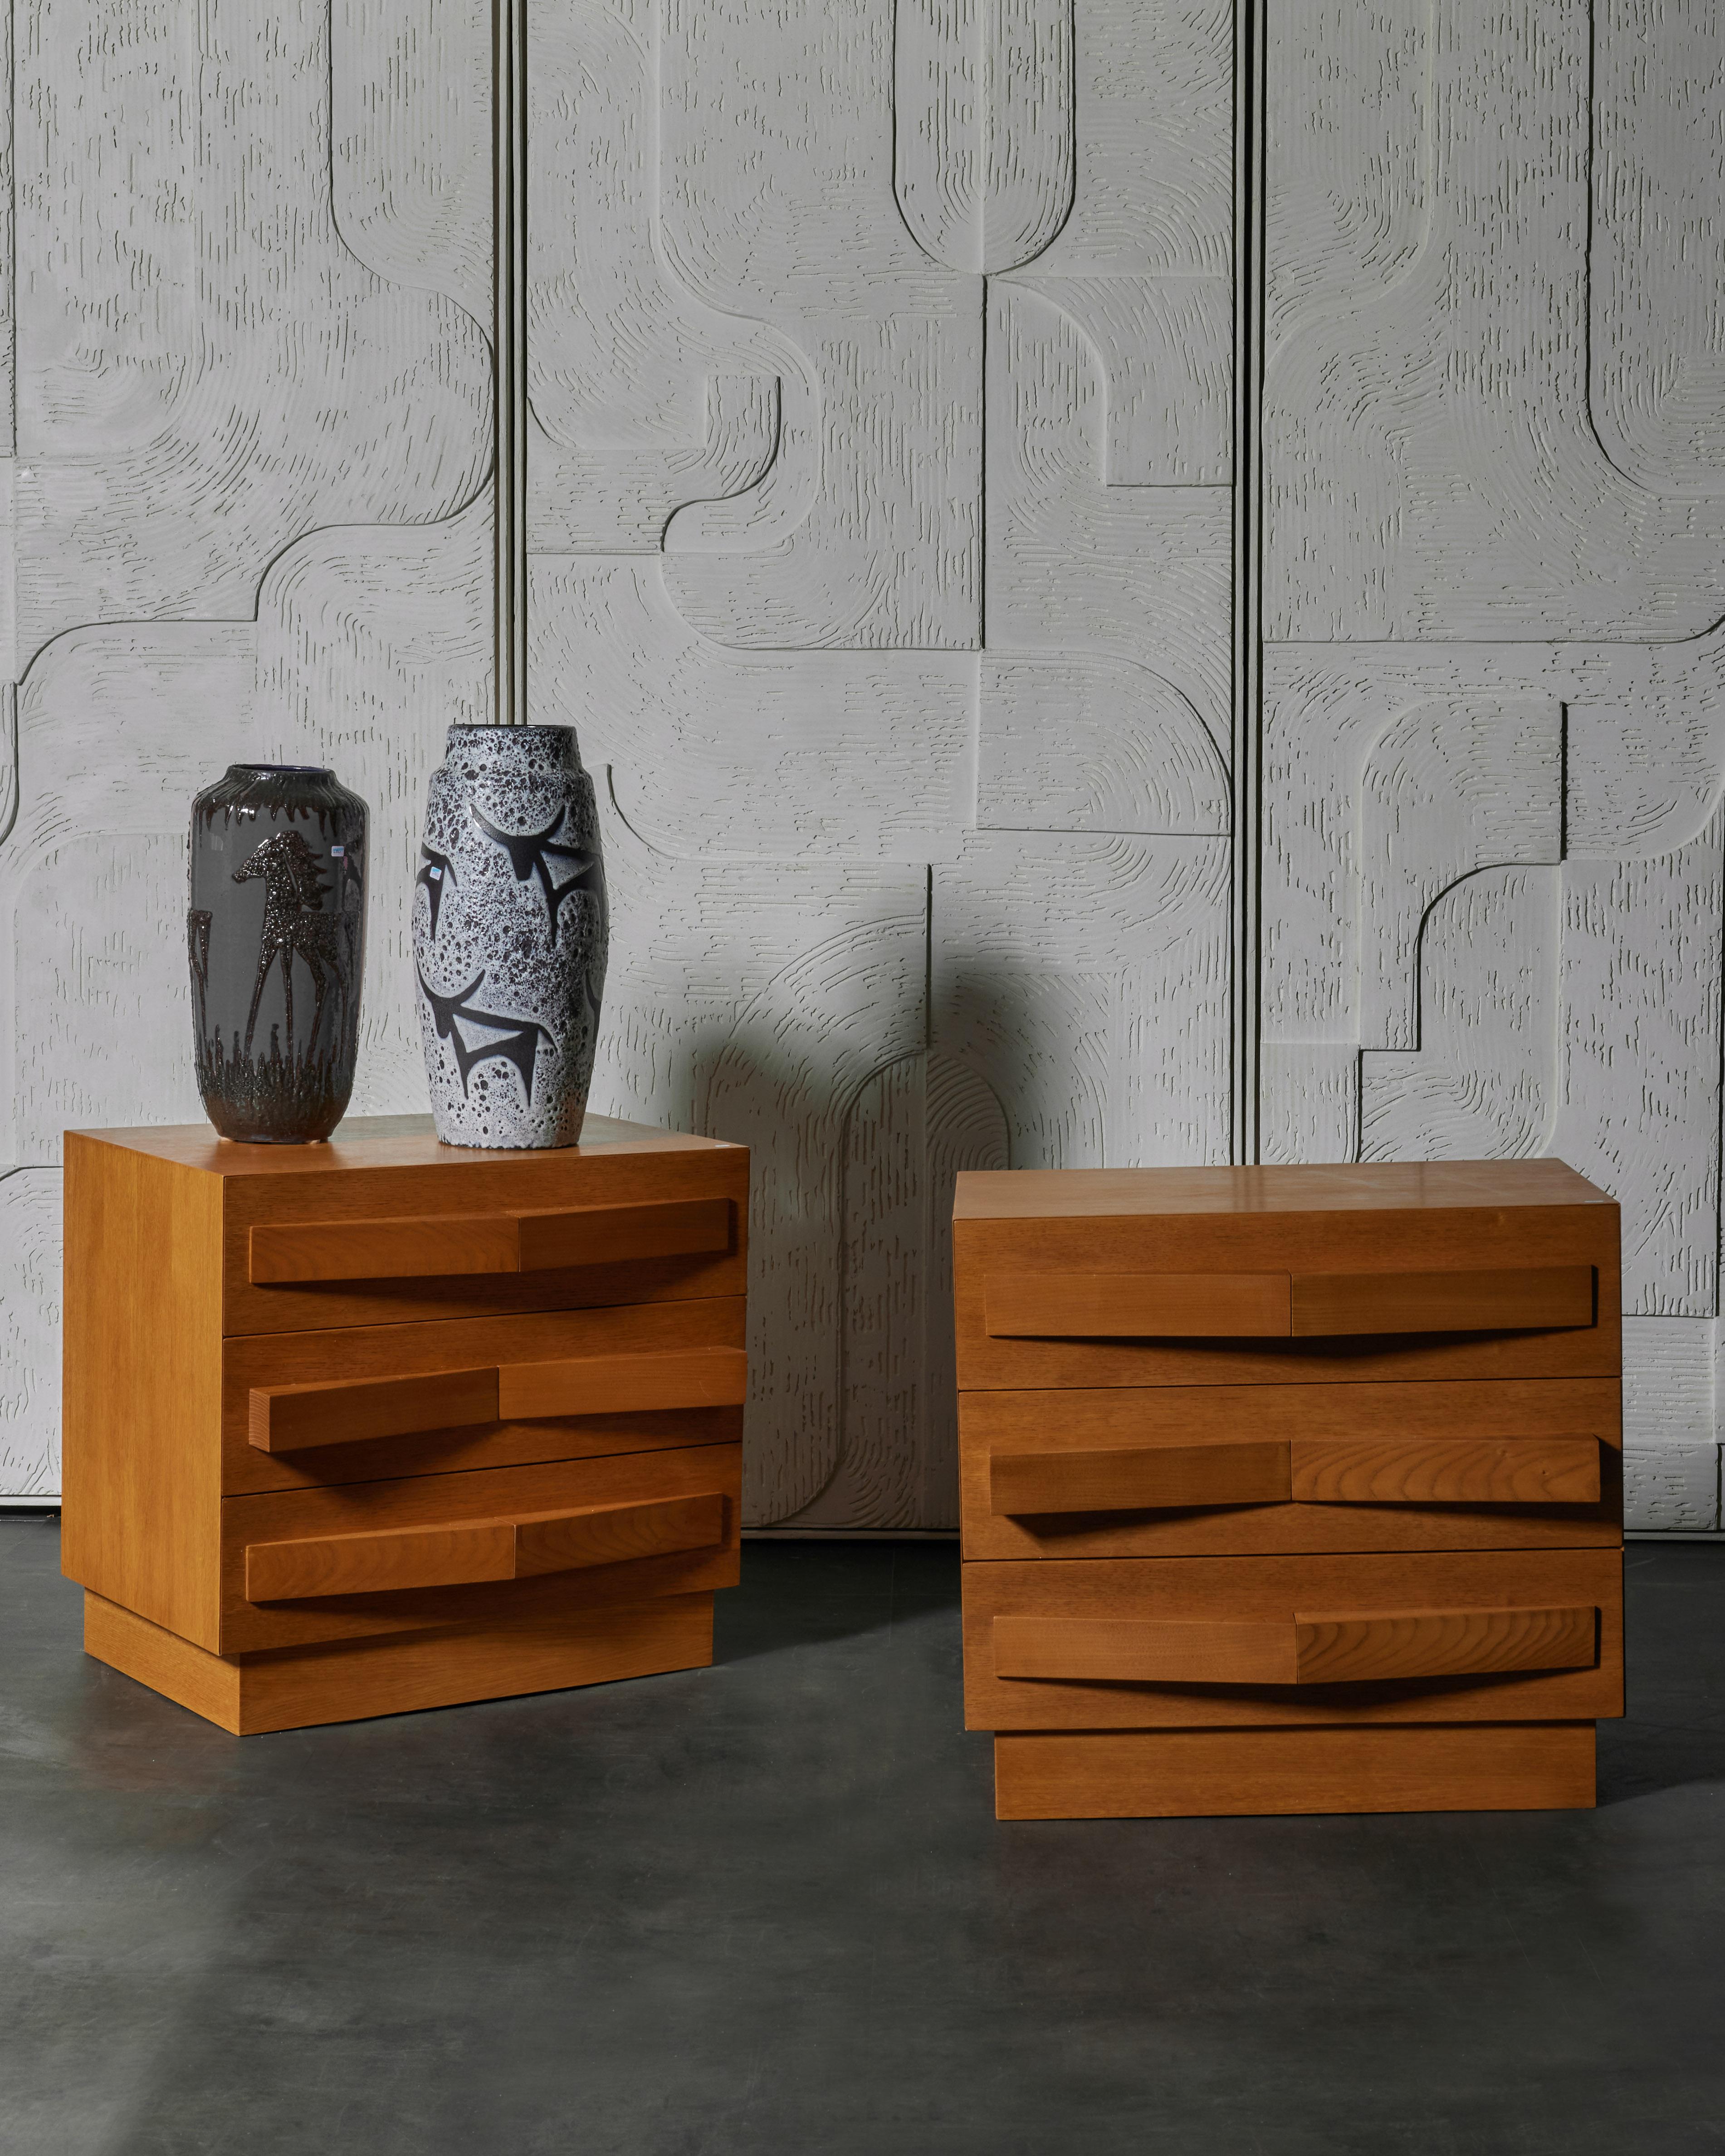 Paire de tables de nuit à 3 tiroirs en bois de chêne.
Création par le Studio Glustin.